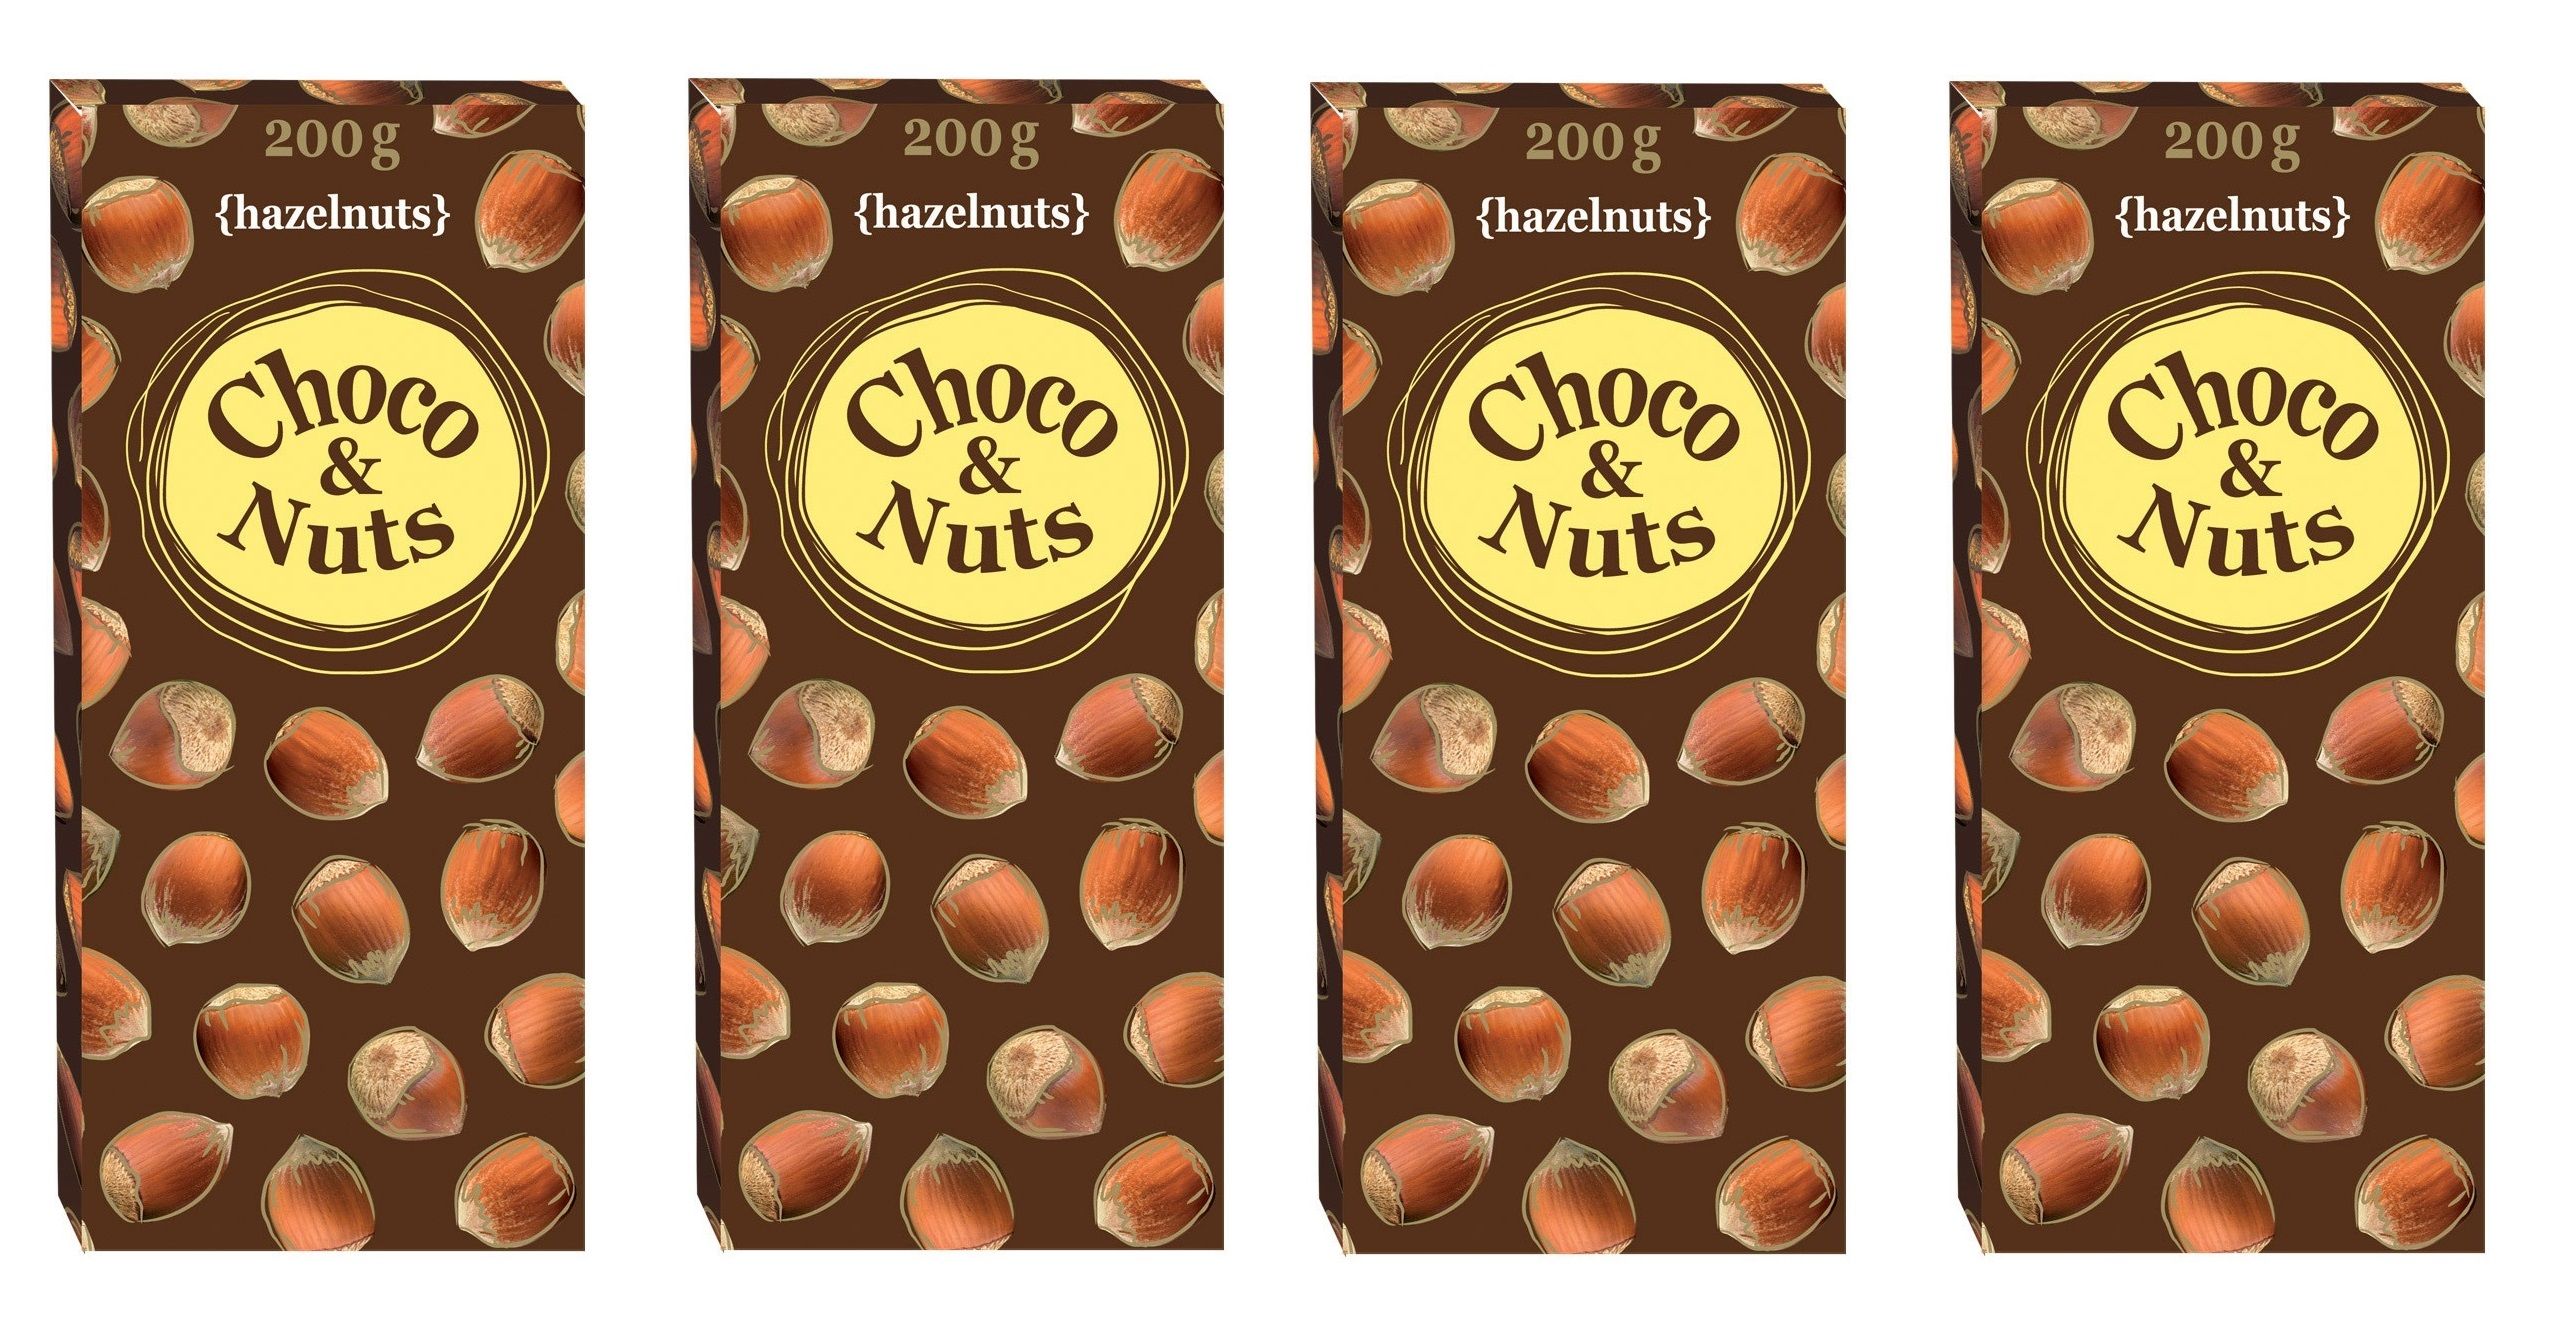 Choco nuts цена. Choco Nuts 200g. Шоколад Чоко энд натс молочный с цельным фундуком. Шоколад с цельным фундуком Choco Nuts красное белое. Шоколад Choco Nuts молочный с цельным миндалем 200.